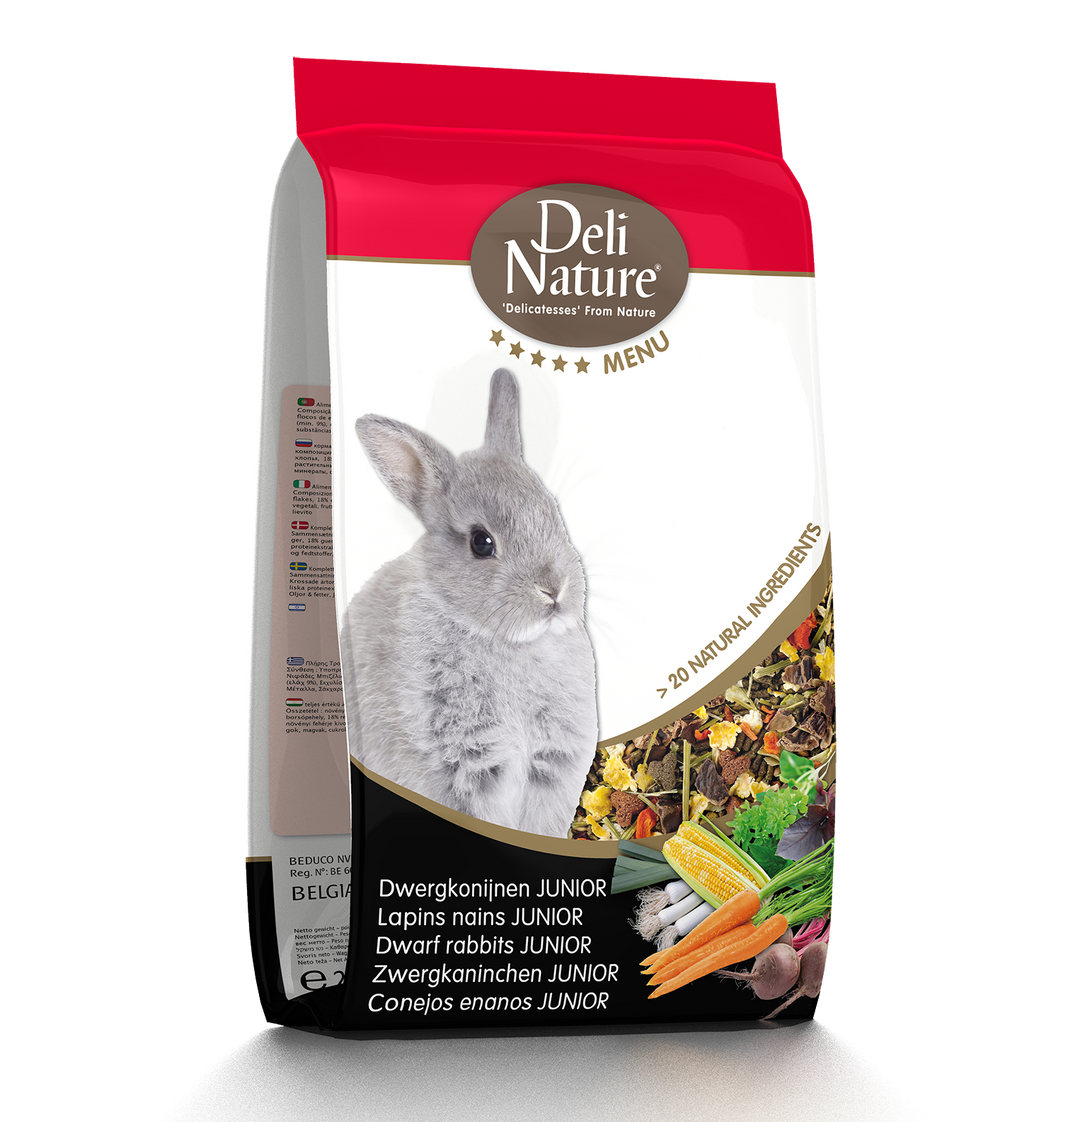 Deli Nature Menu Dwarf Rabbit Junior